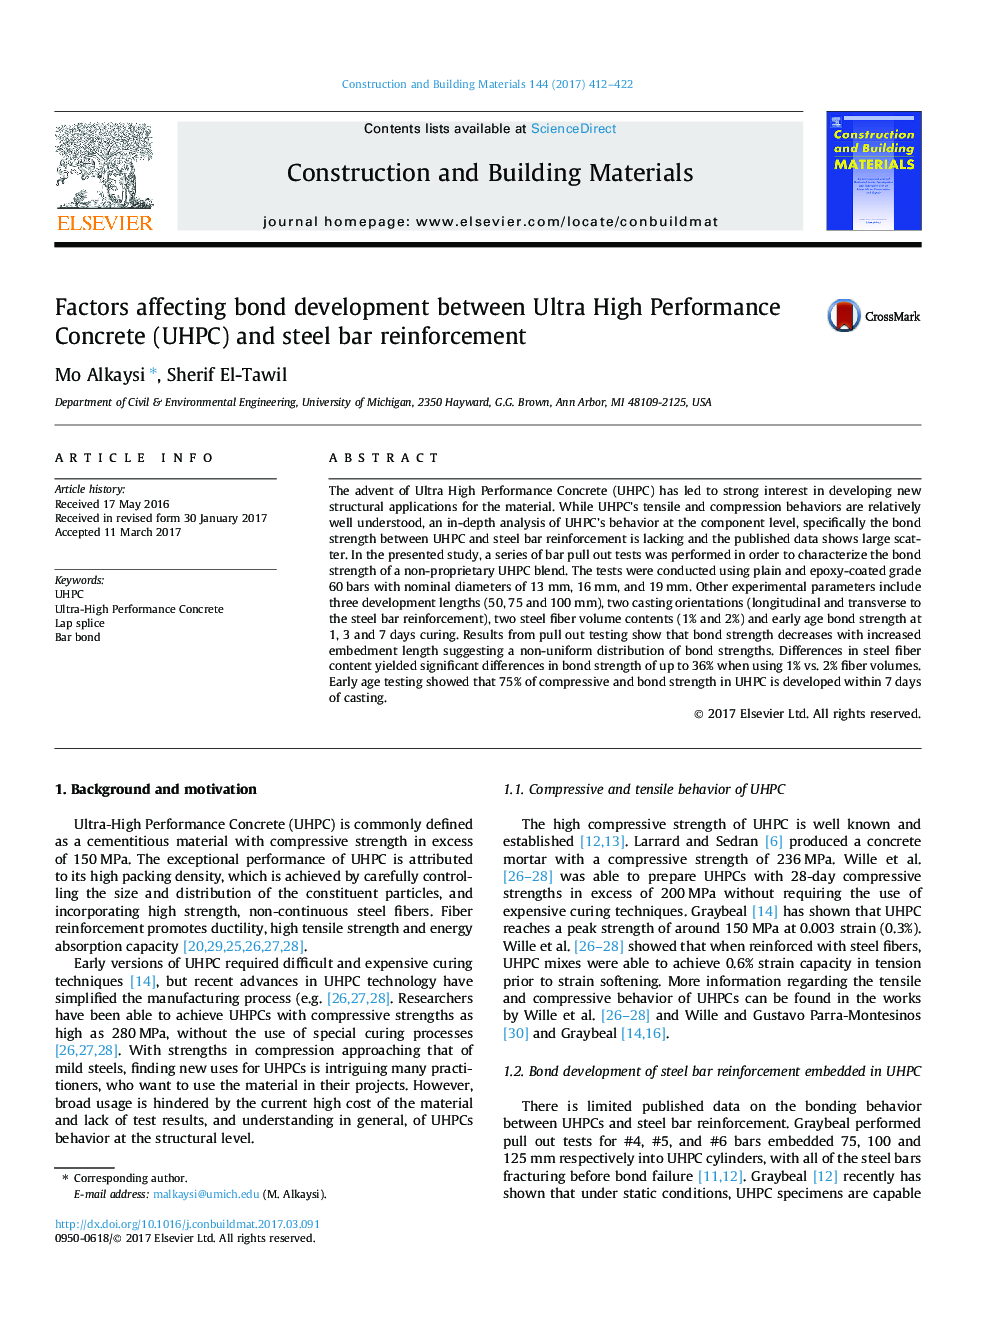 Factors affecting bond development between Ultra High Performance Concrete (UHPC) and steel bar reinforcement